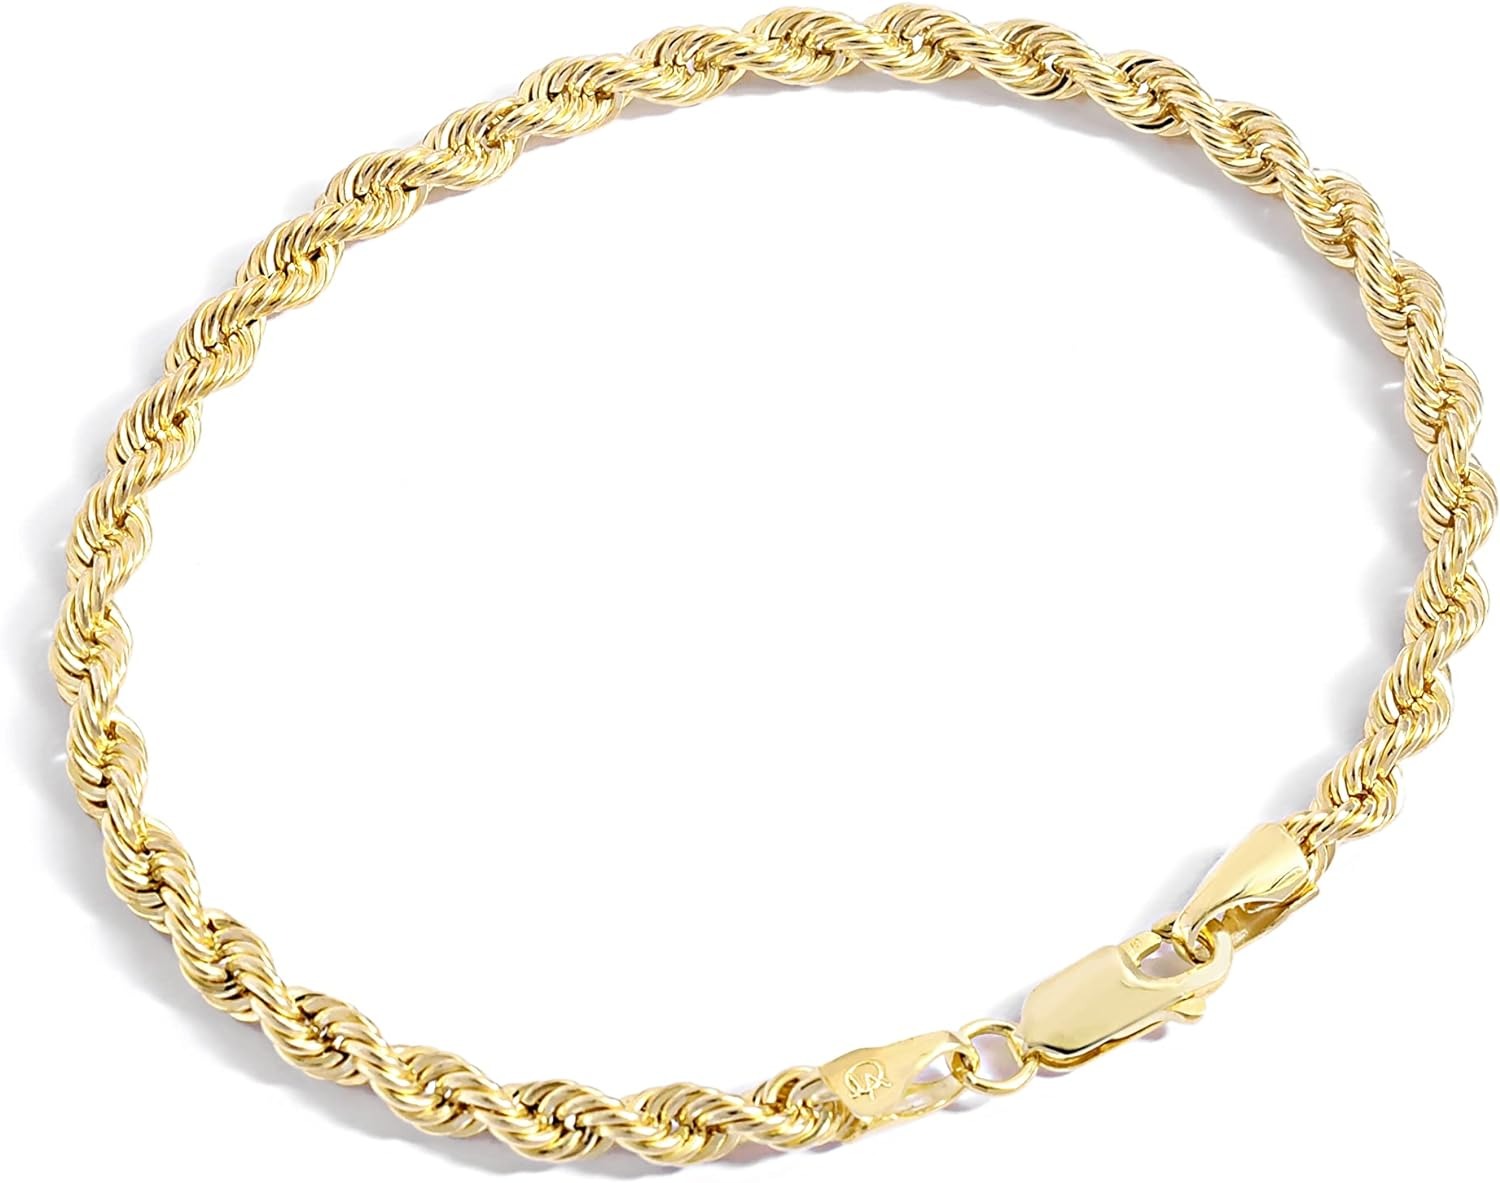 Jewelry Atelier Altın Dolgulu Zincir Bileklik Koleksiyonu - Farklı Boyutlarda Kadın ve Erkekler için 14 Ayar Katı Sarı Altın Dolgulu Halat Zincir Bileklikler (2,7mm, 3,8mm)